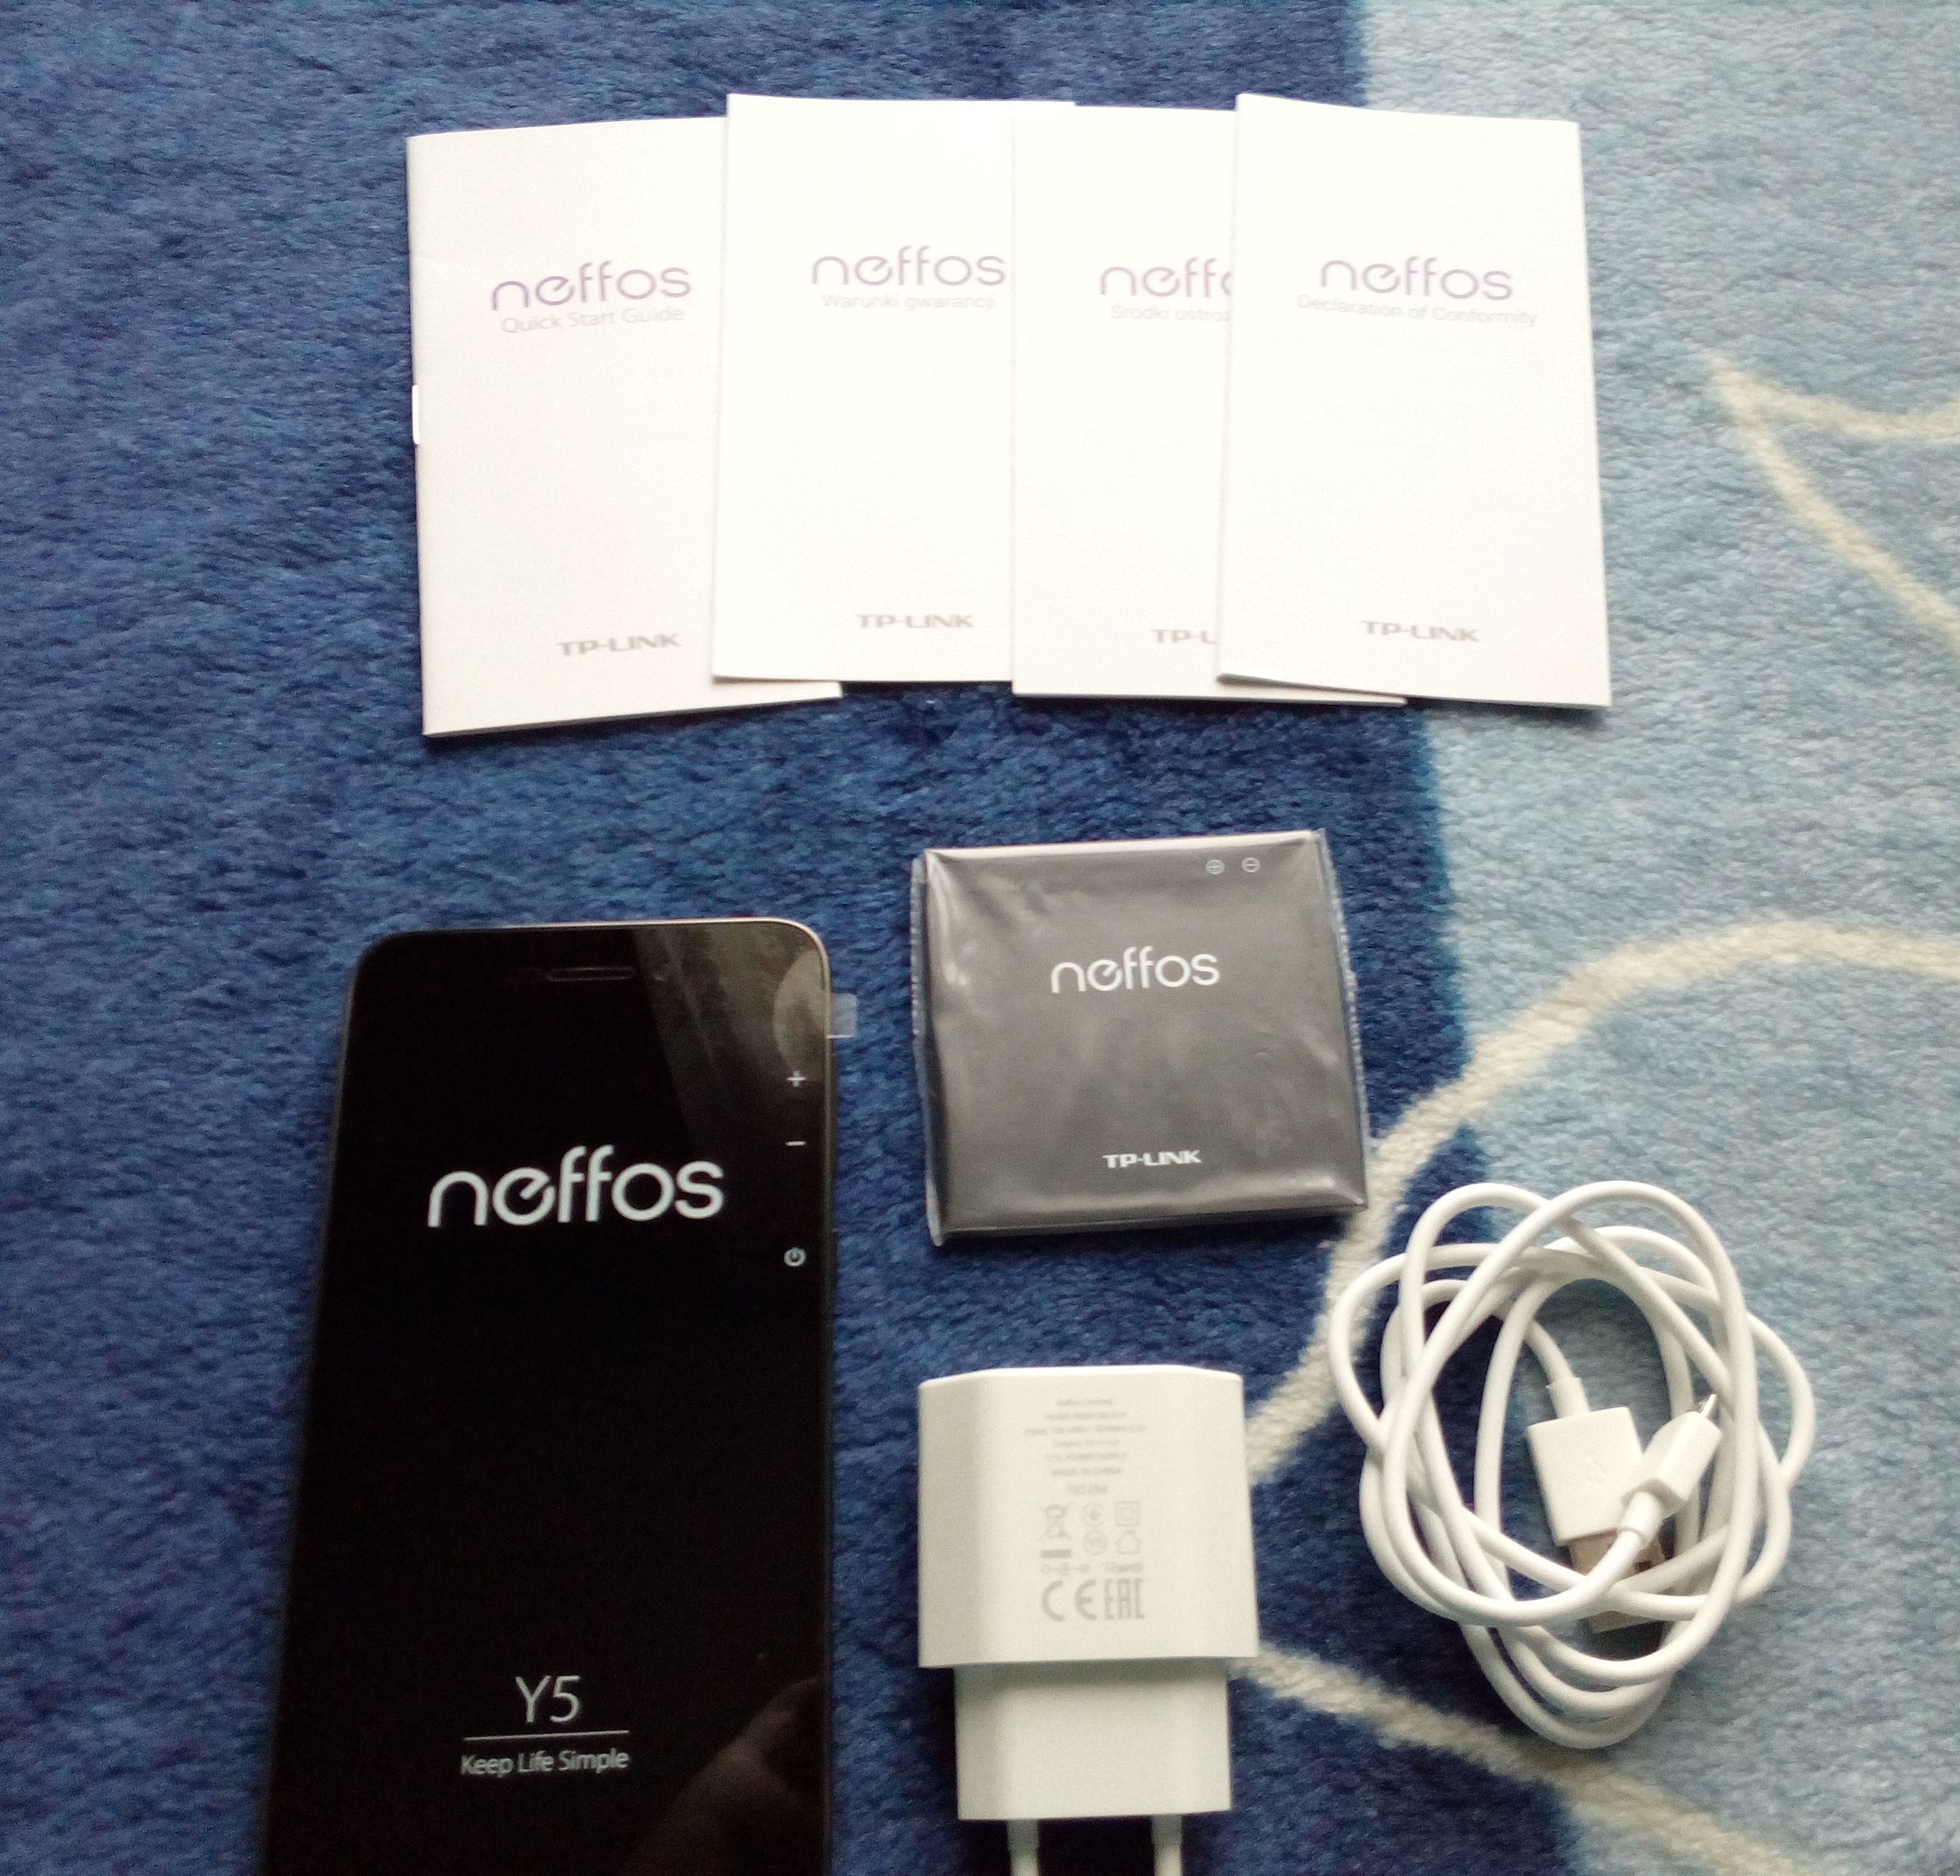 neffos-y5-smartfon-tp-link-opakowanie-zawartosc